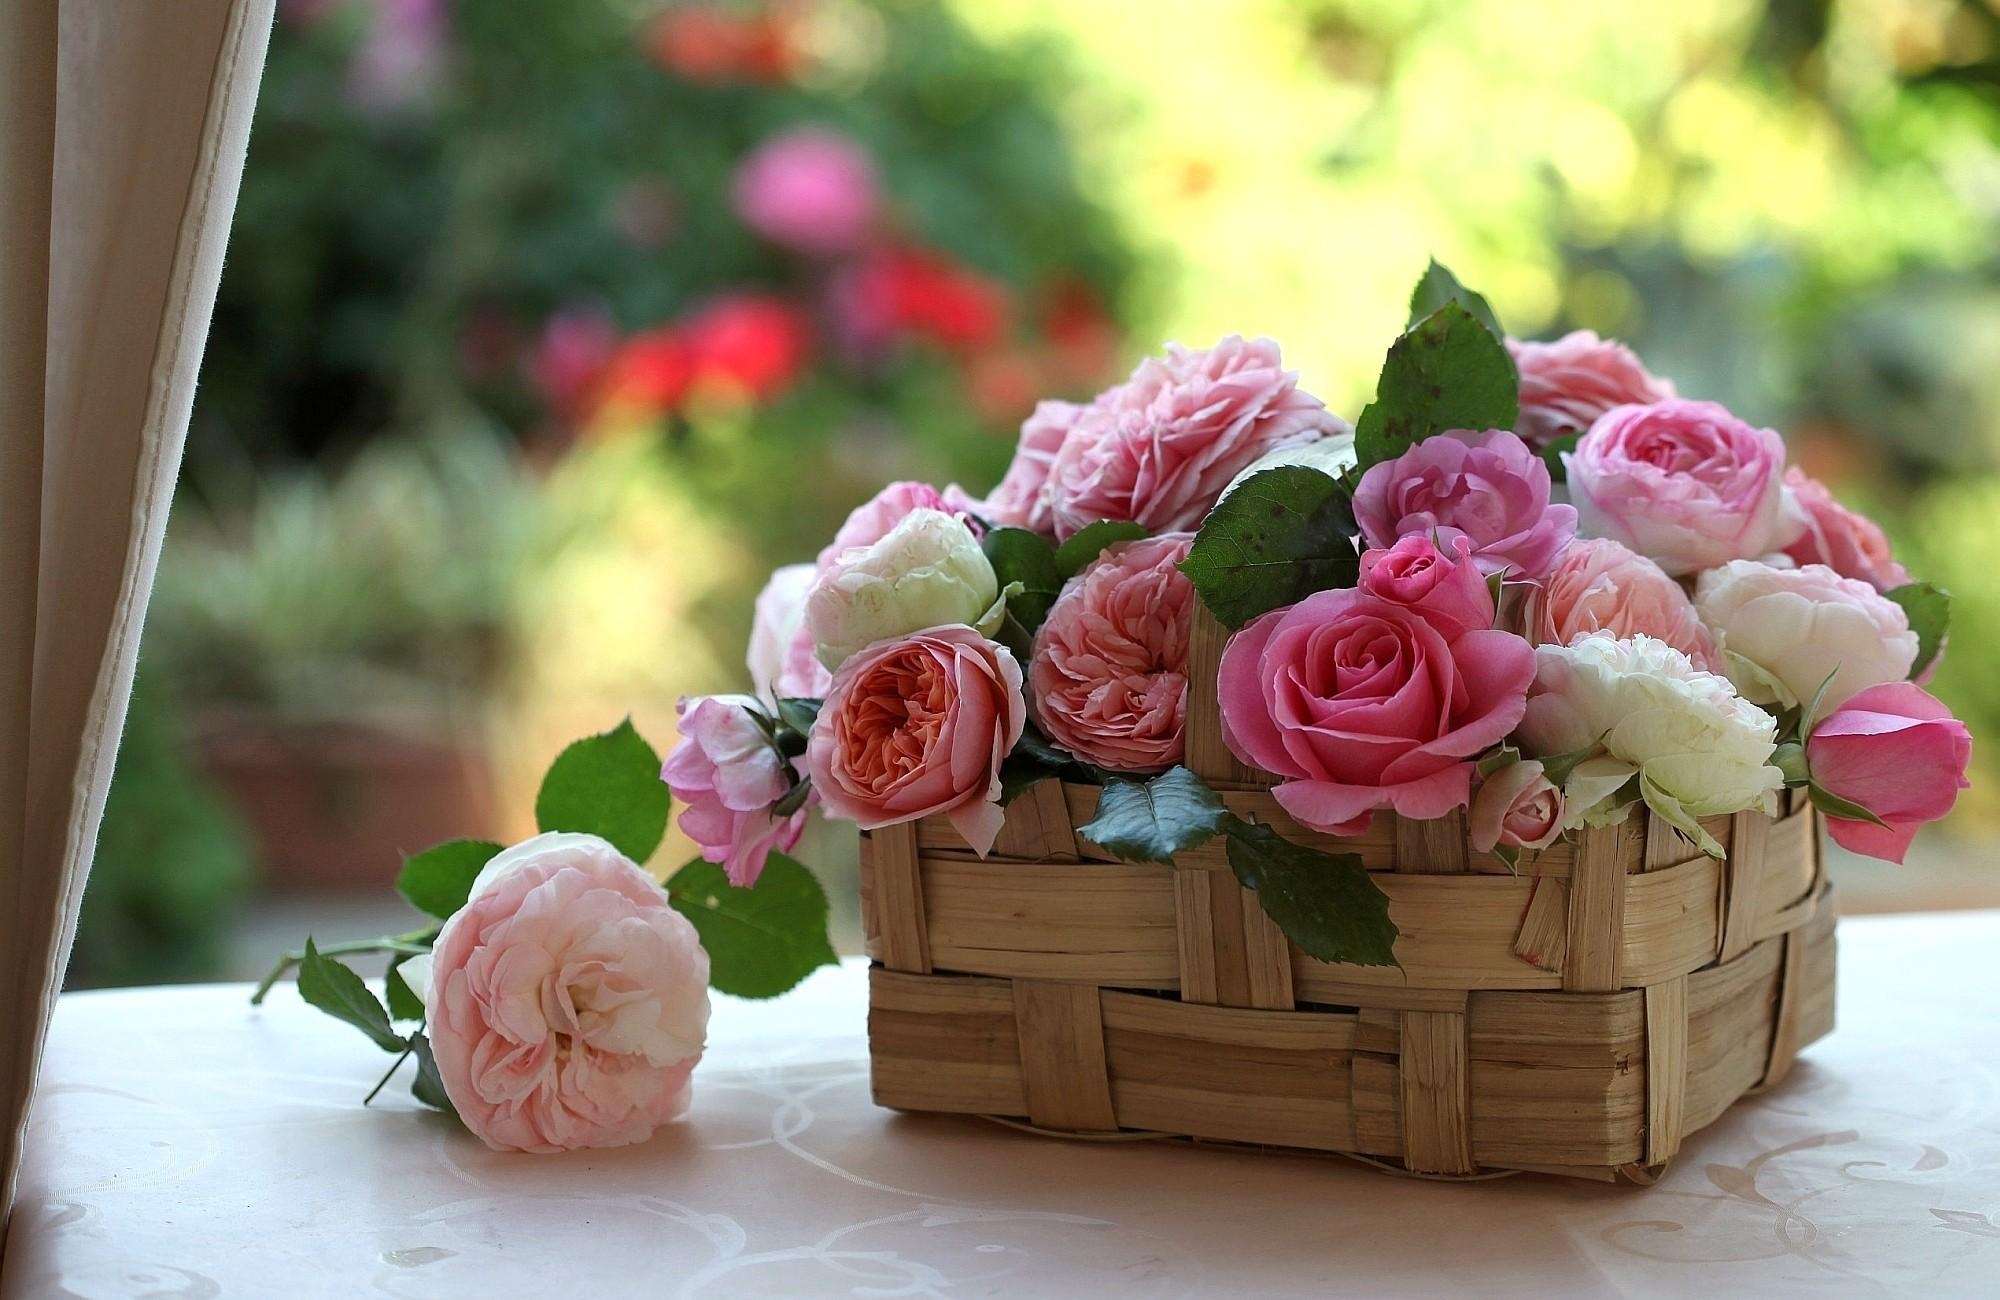 Скачать обои бесплатно Цветы, Красота, Розы, Бутоны, Корзинка картинка на рабочий стол ПК